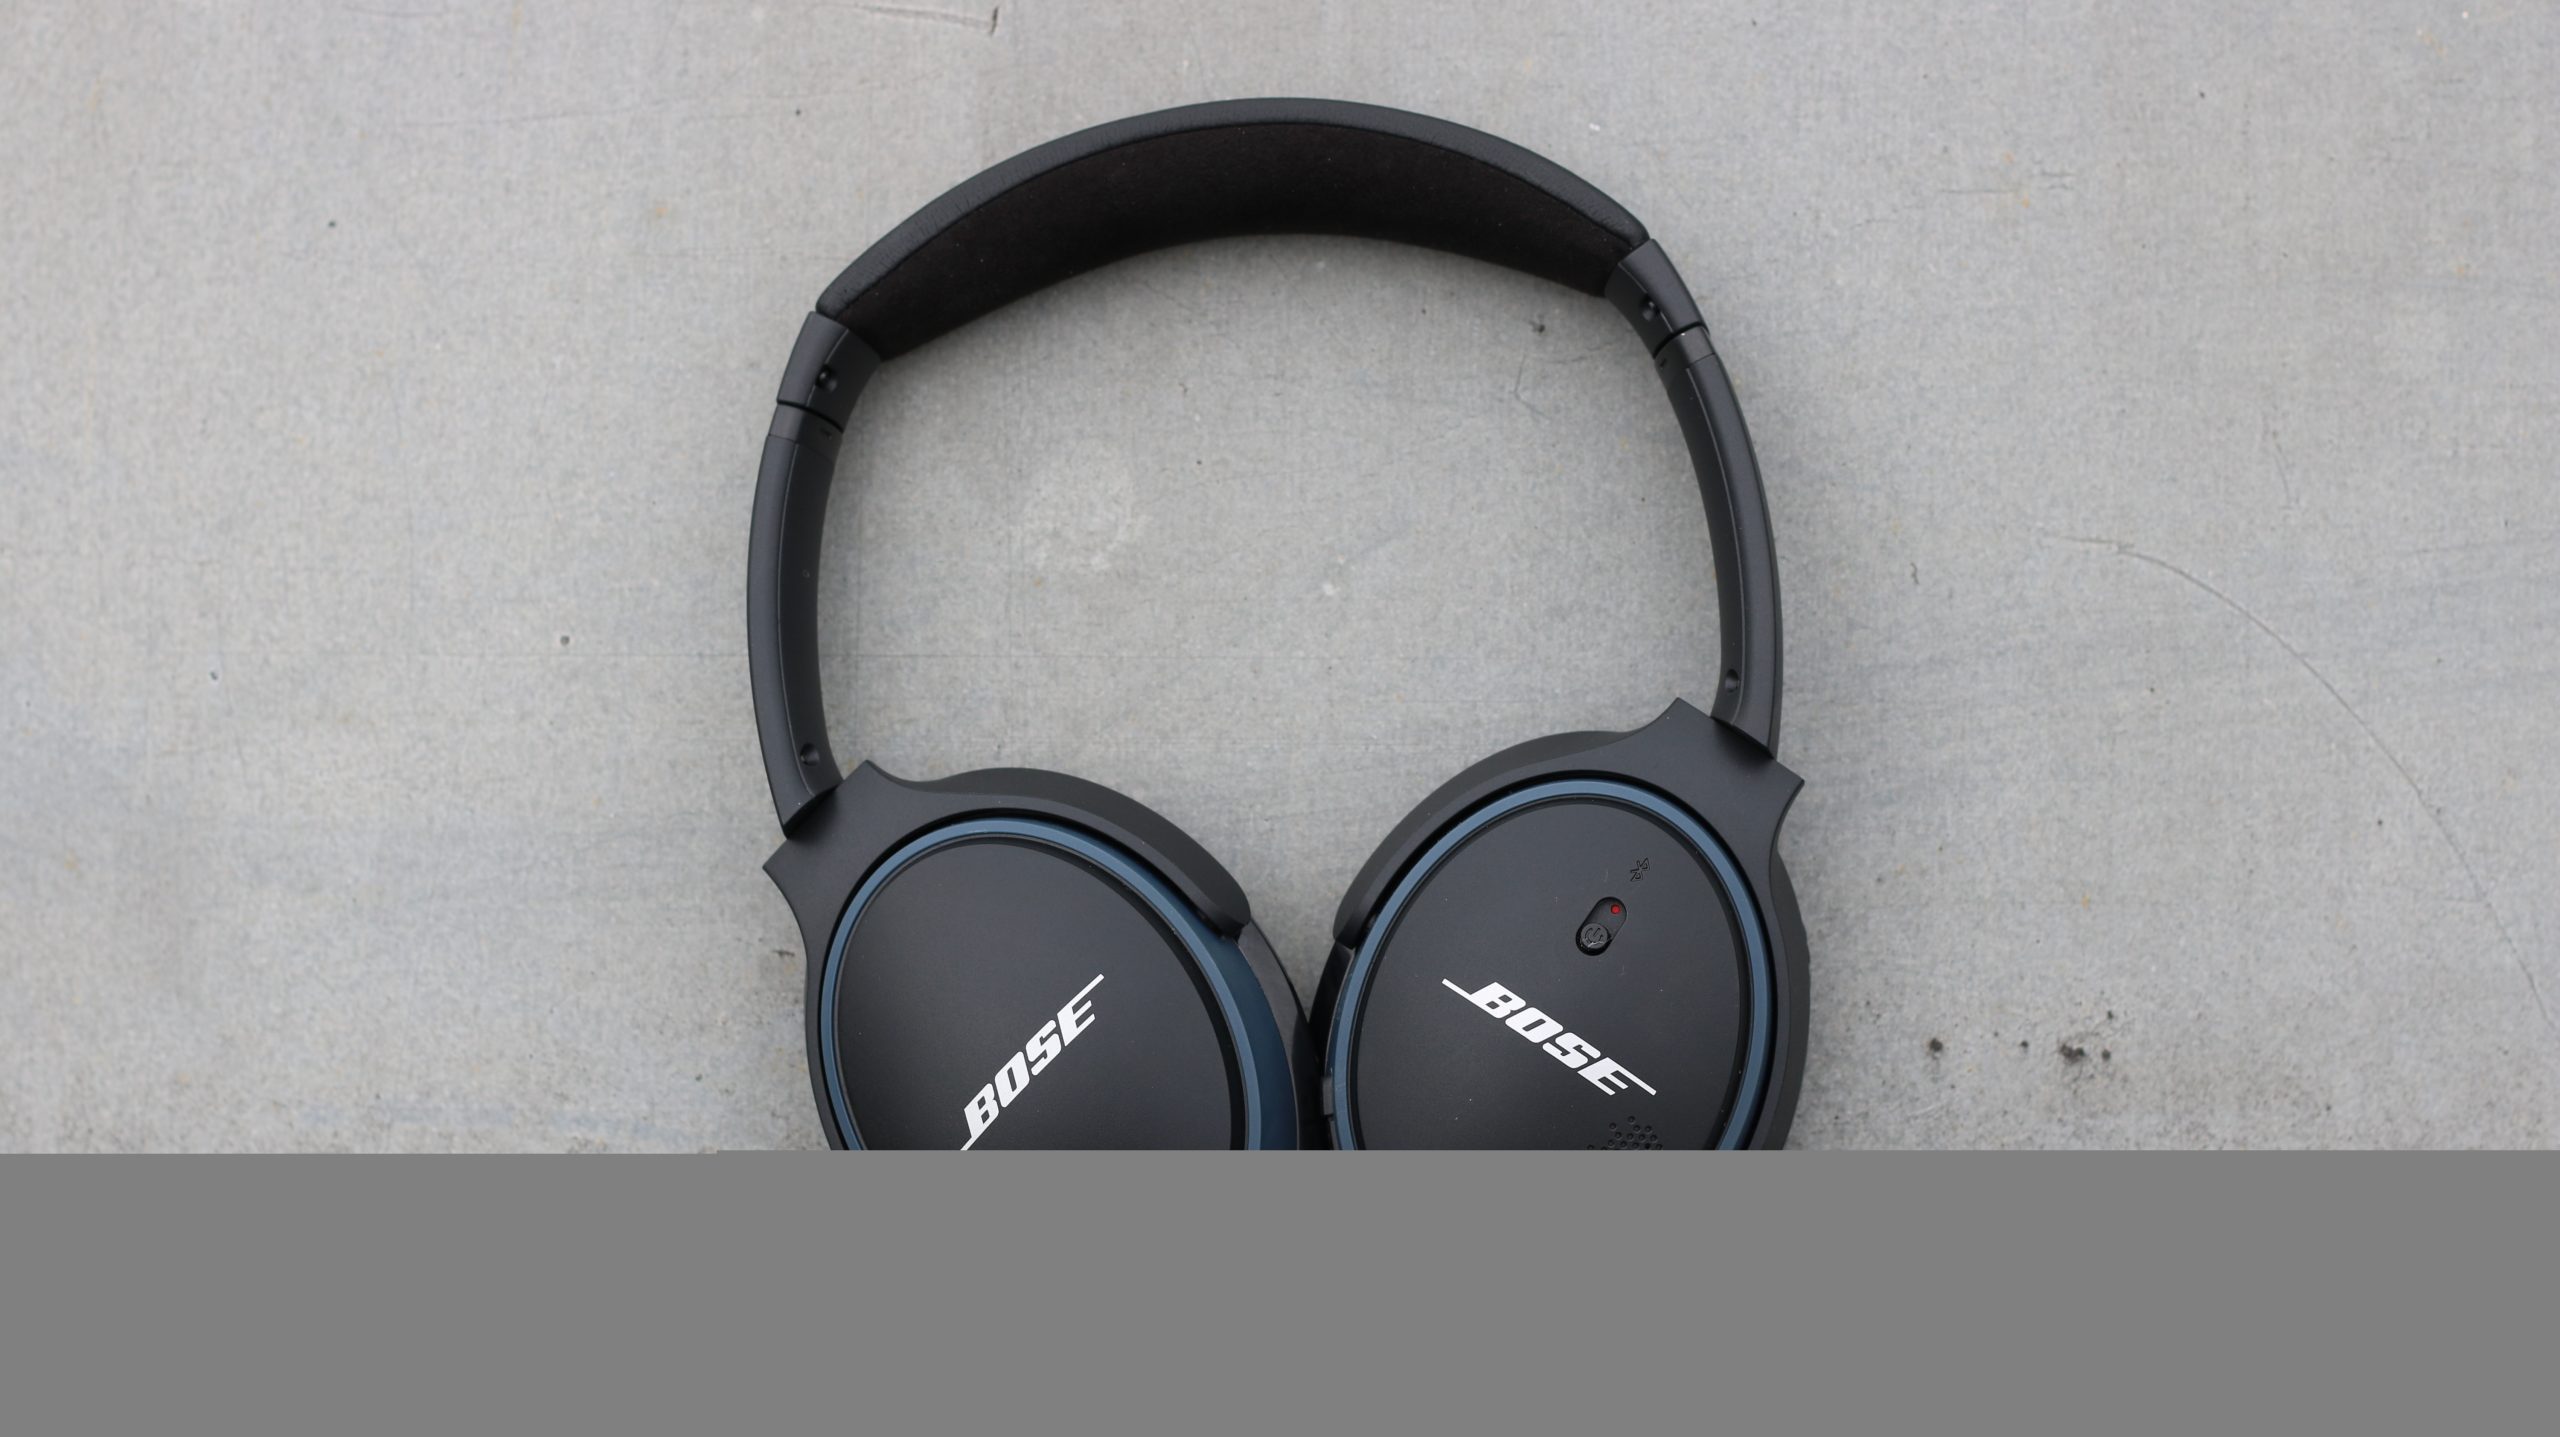 Auriculares inalámbricos Bose SoundLink II: sigue siendo una buena elección